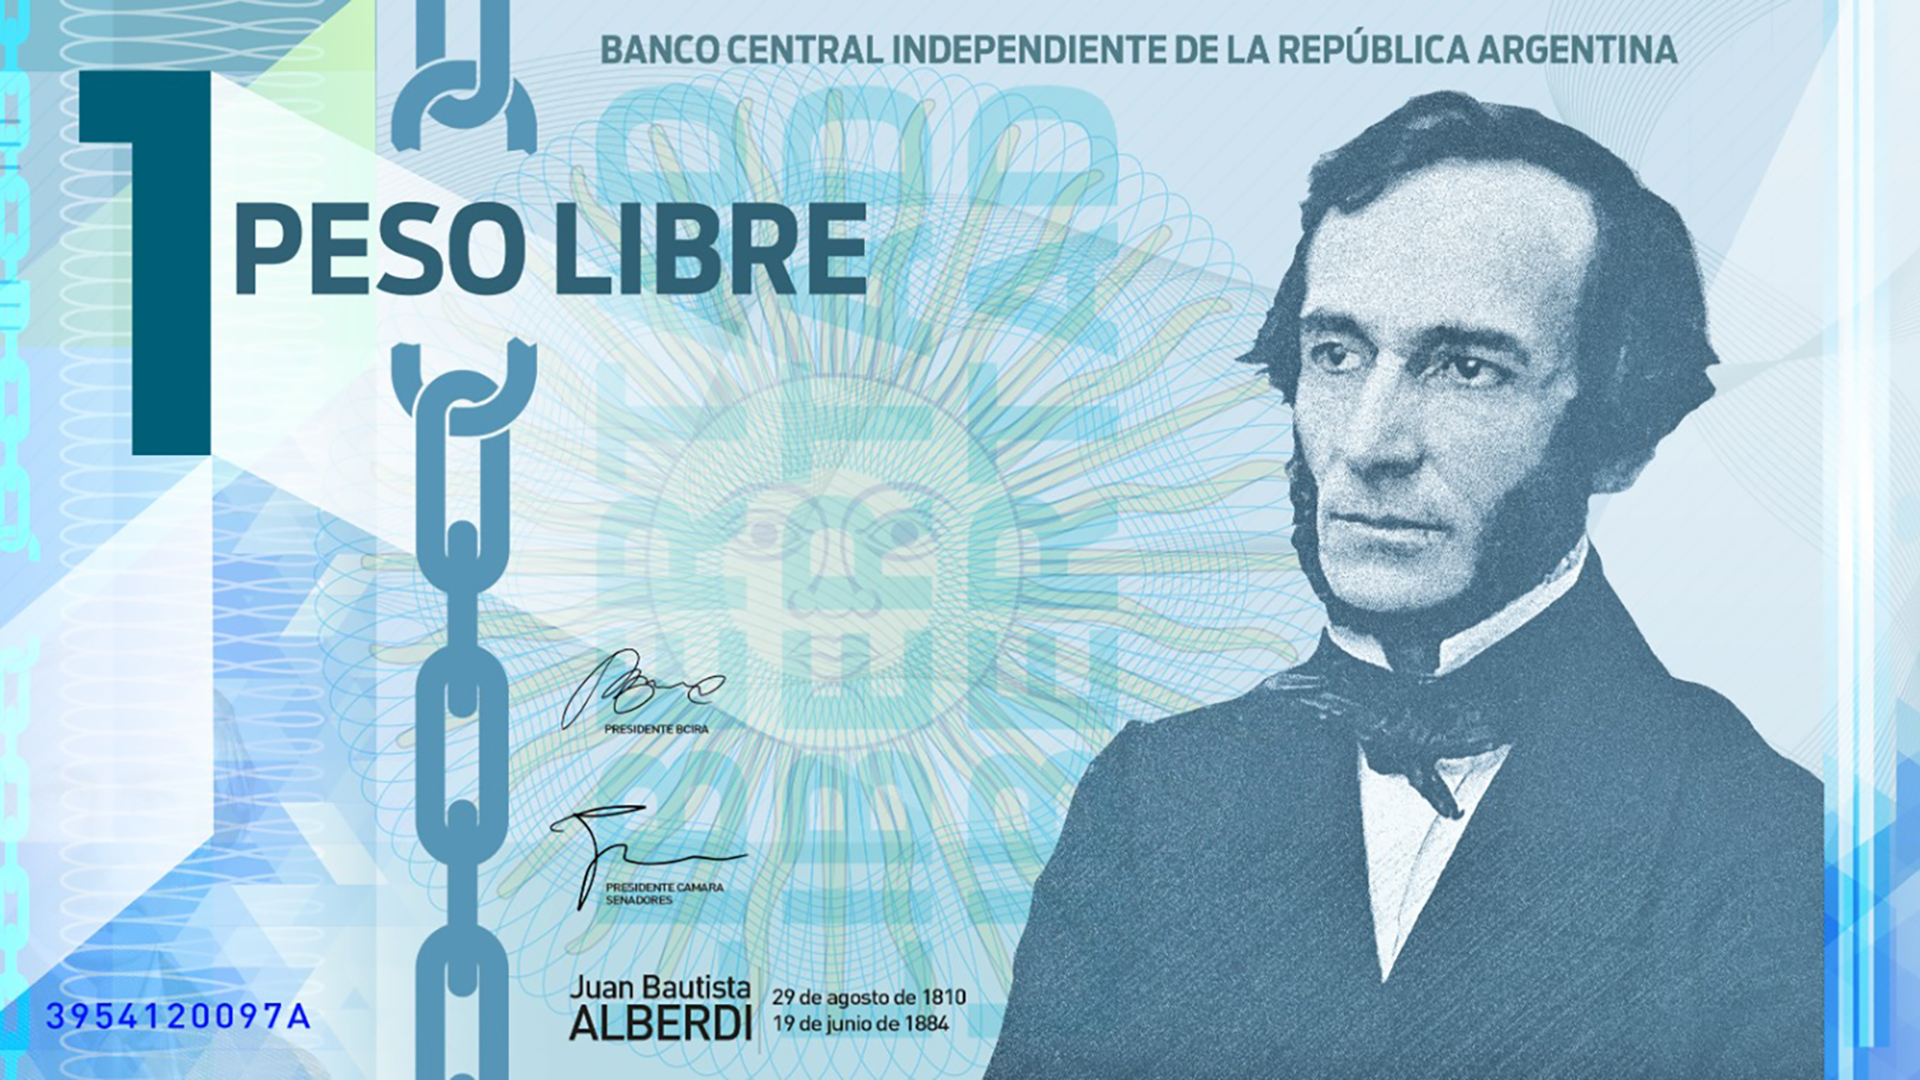 La moneda que propone Espert lleva la cara de Juan Bautista Alberdi 